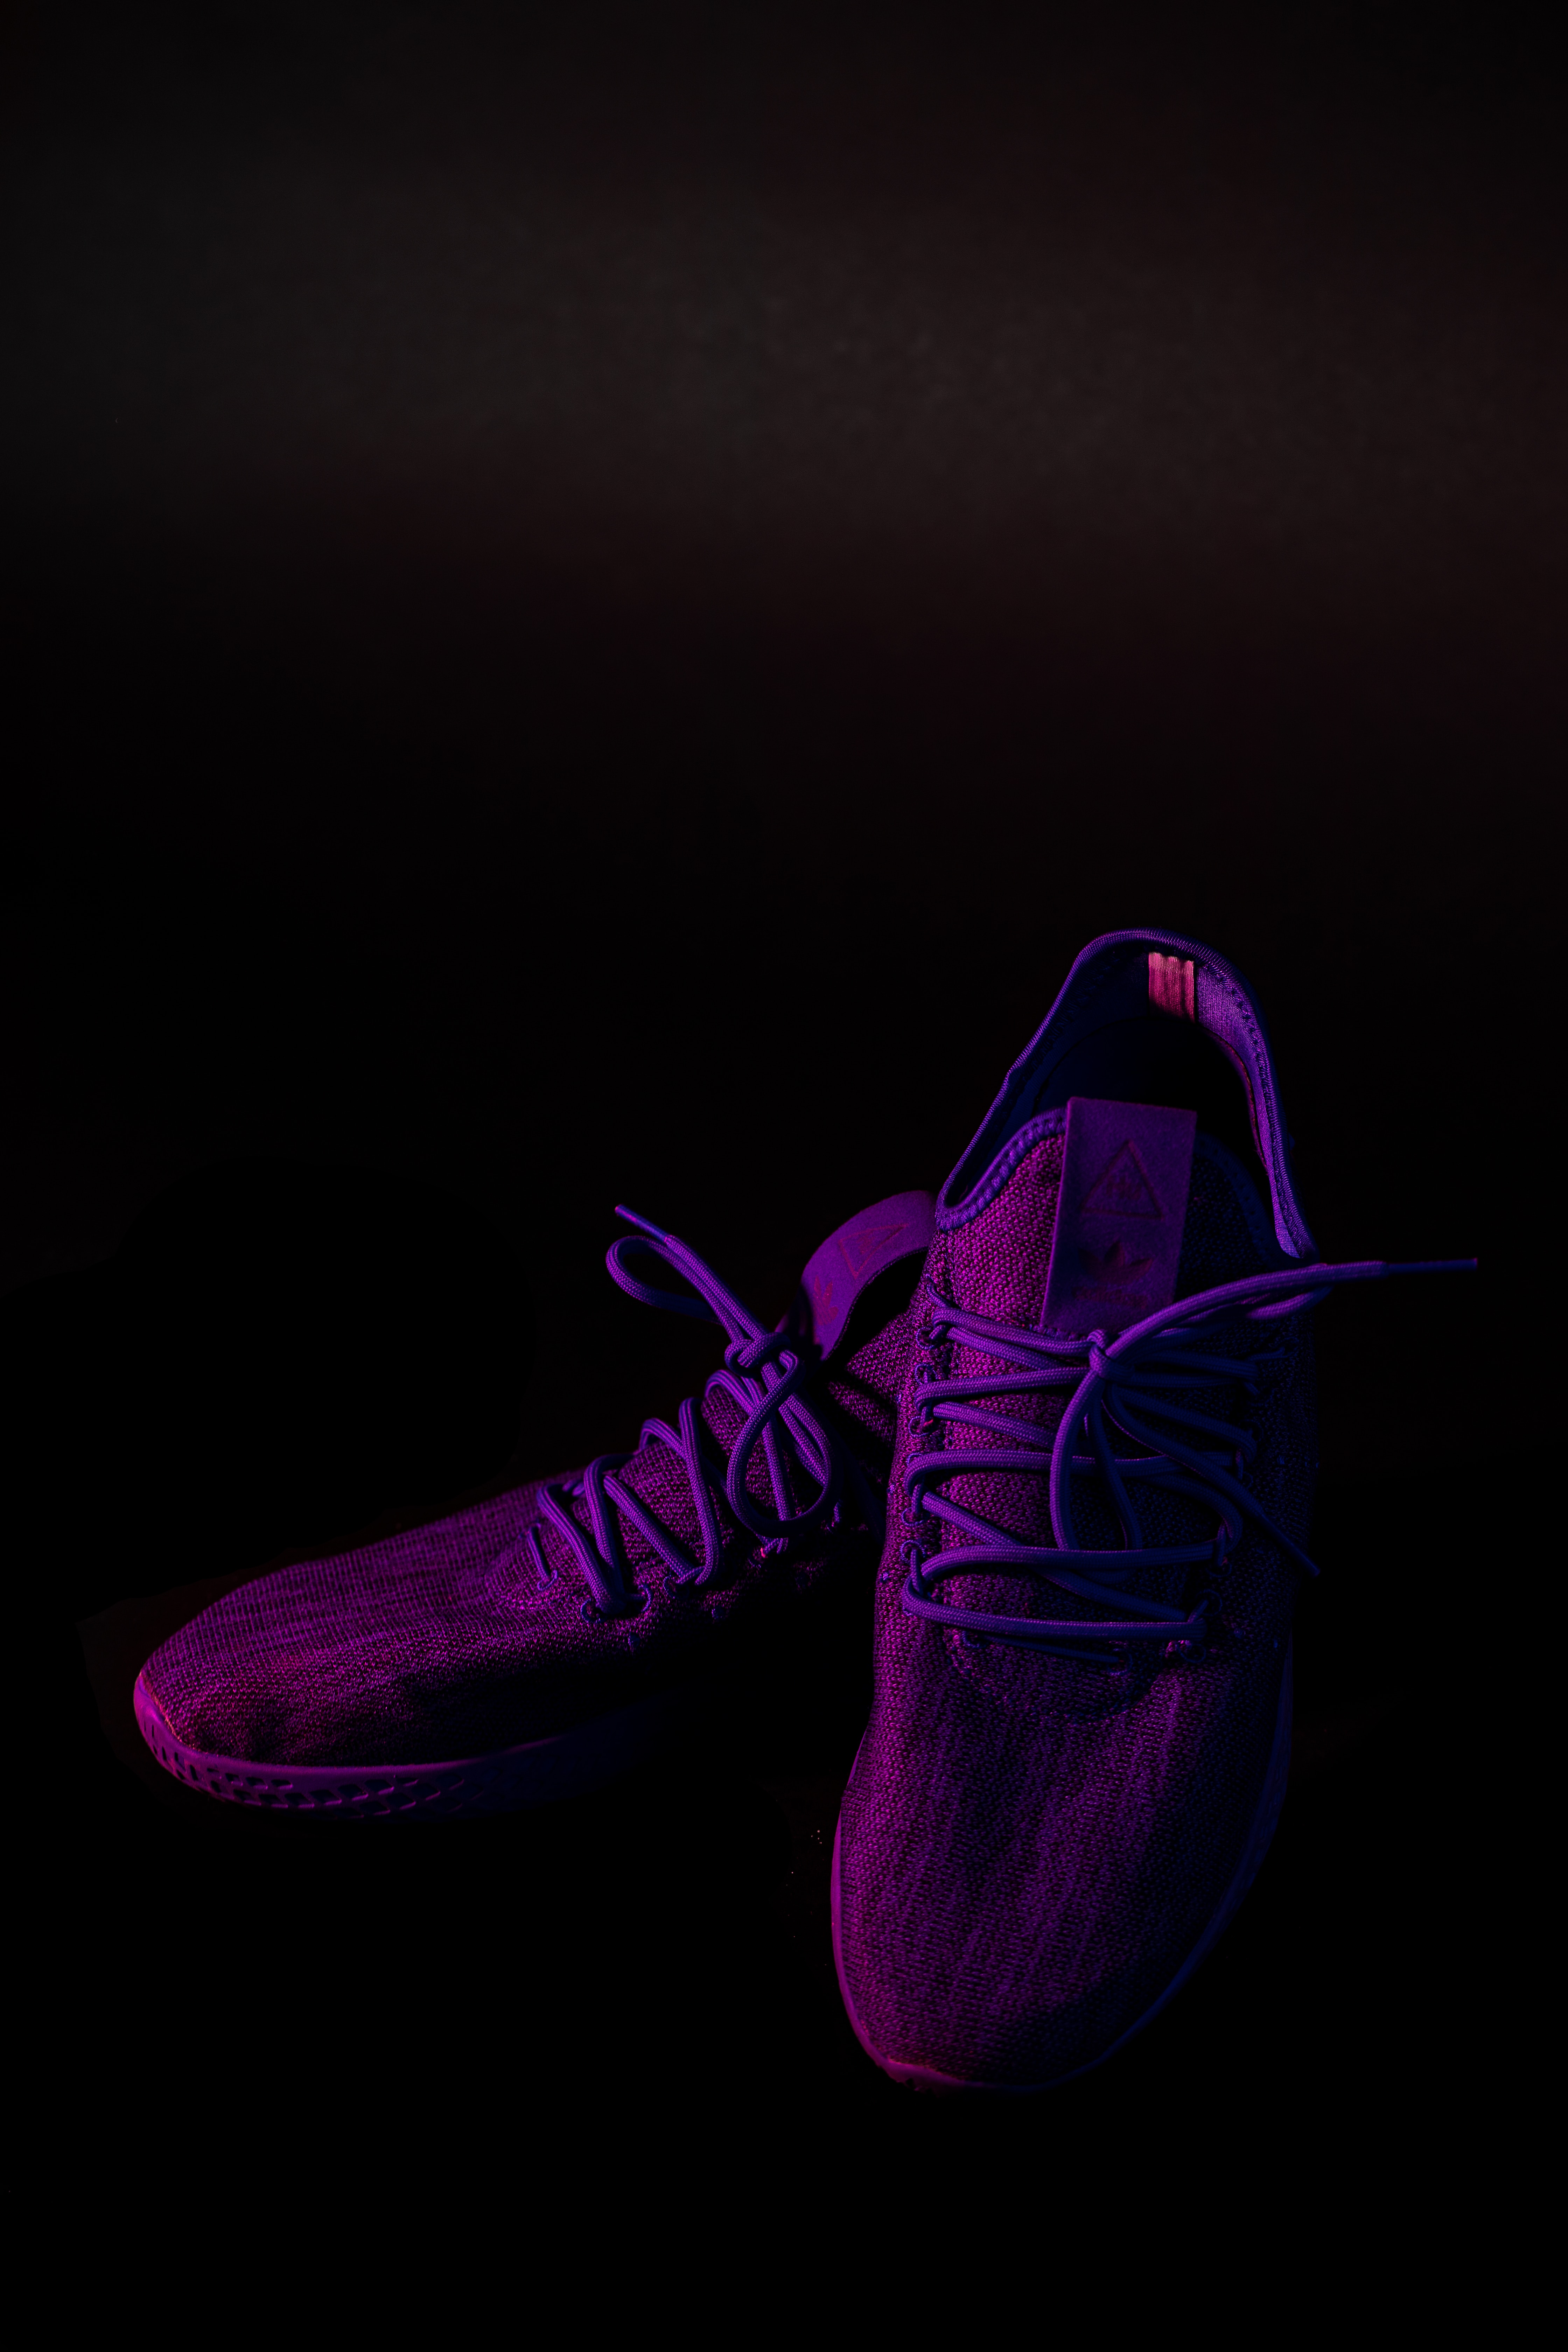 Sneakers violet, dark, purple, footwear Free Stock Photos